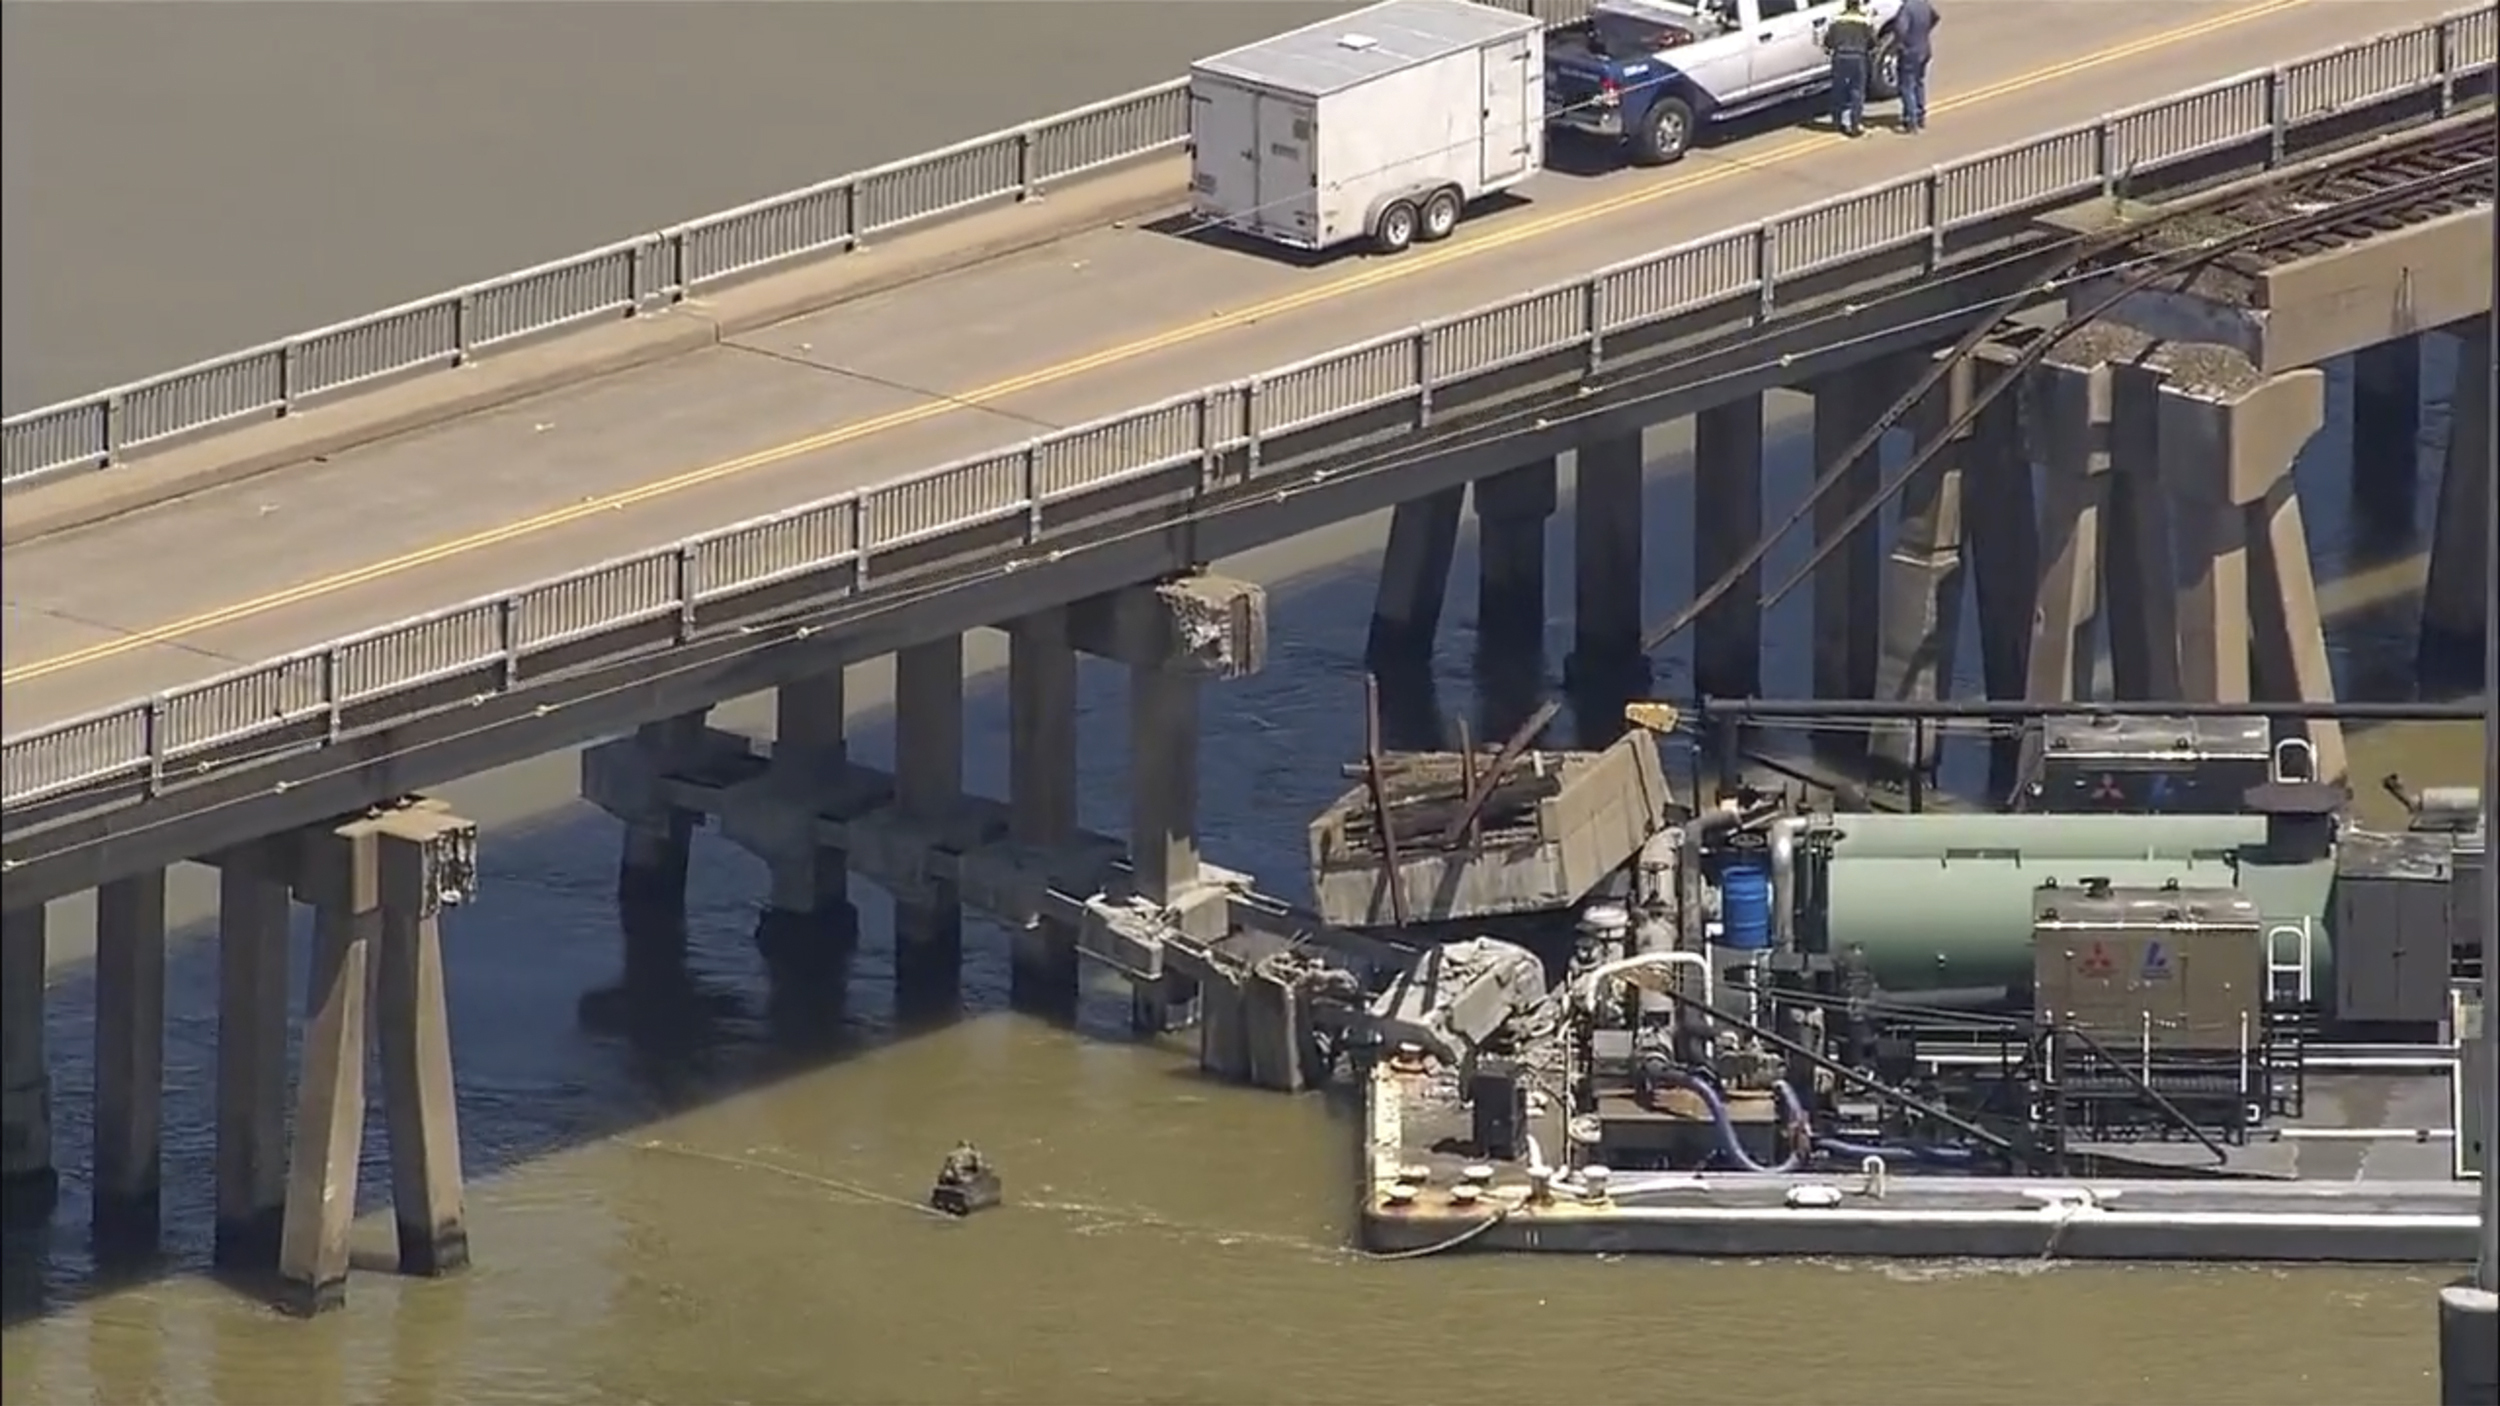 Tàu chở hàng va phải cầu ở Galveston, Texas, gây sụp đổ một phần và tràn dầu